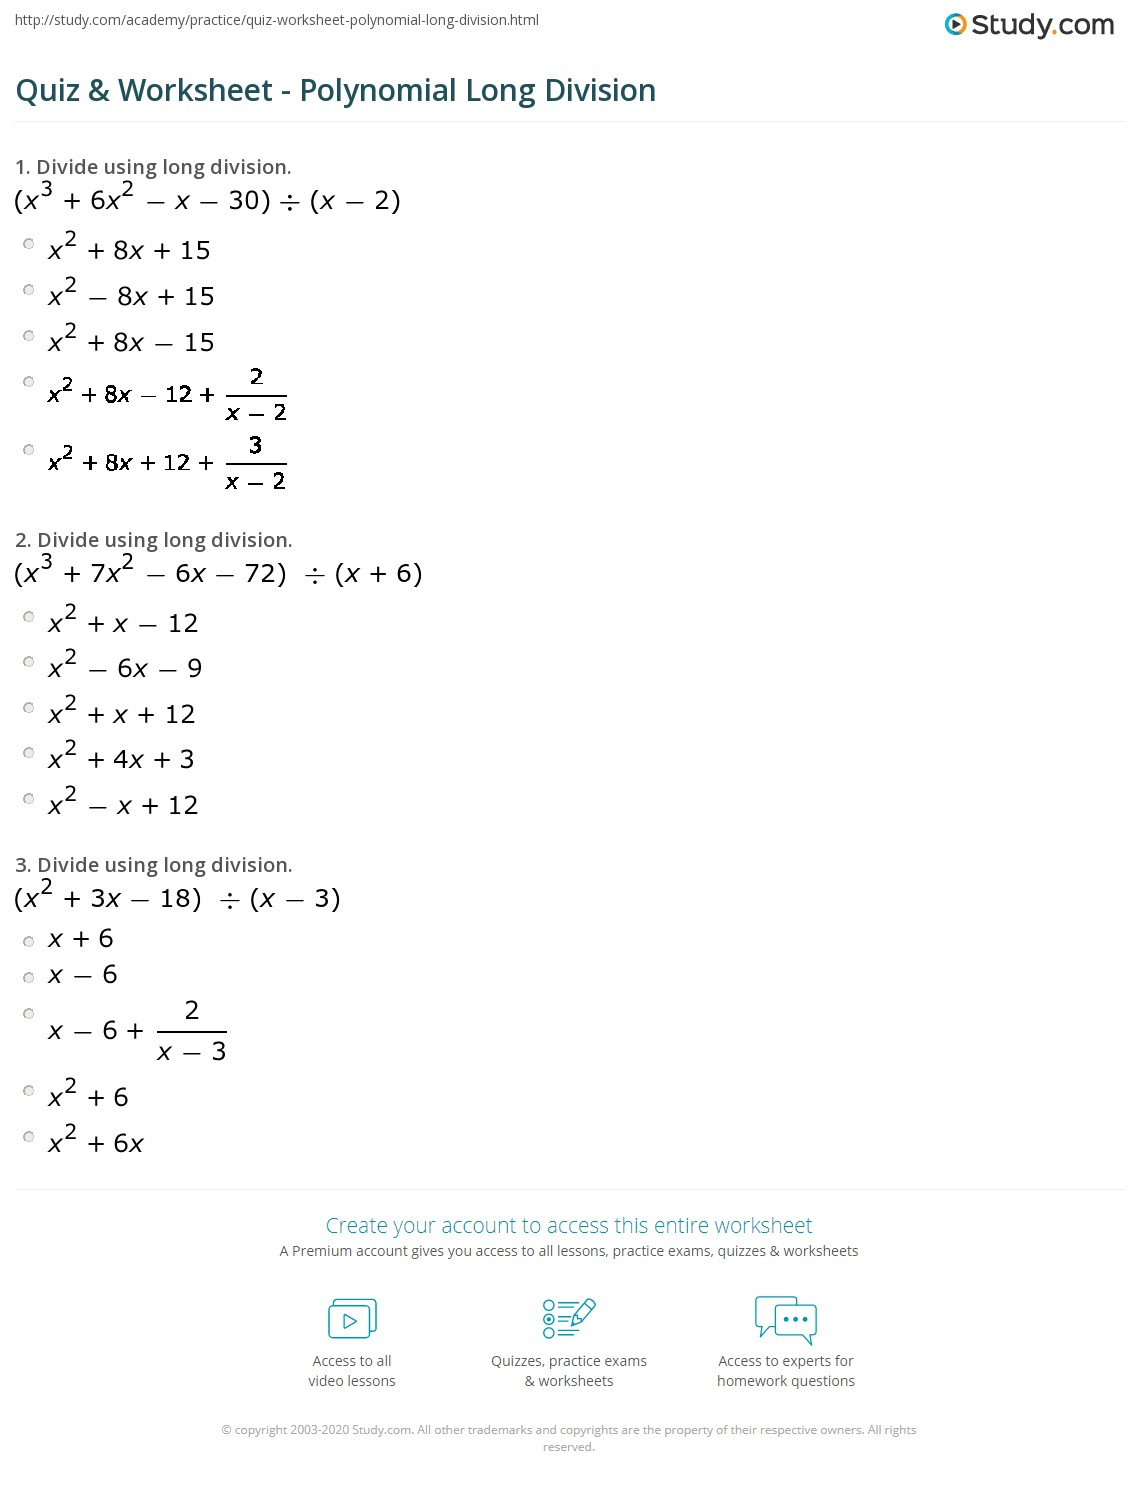 Dividing Polynomials Worksheet Answers Quiz &amp; Worksheet Polynomial Long Division